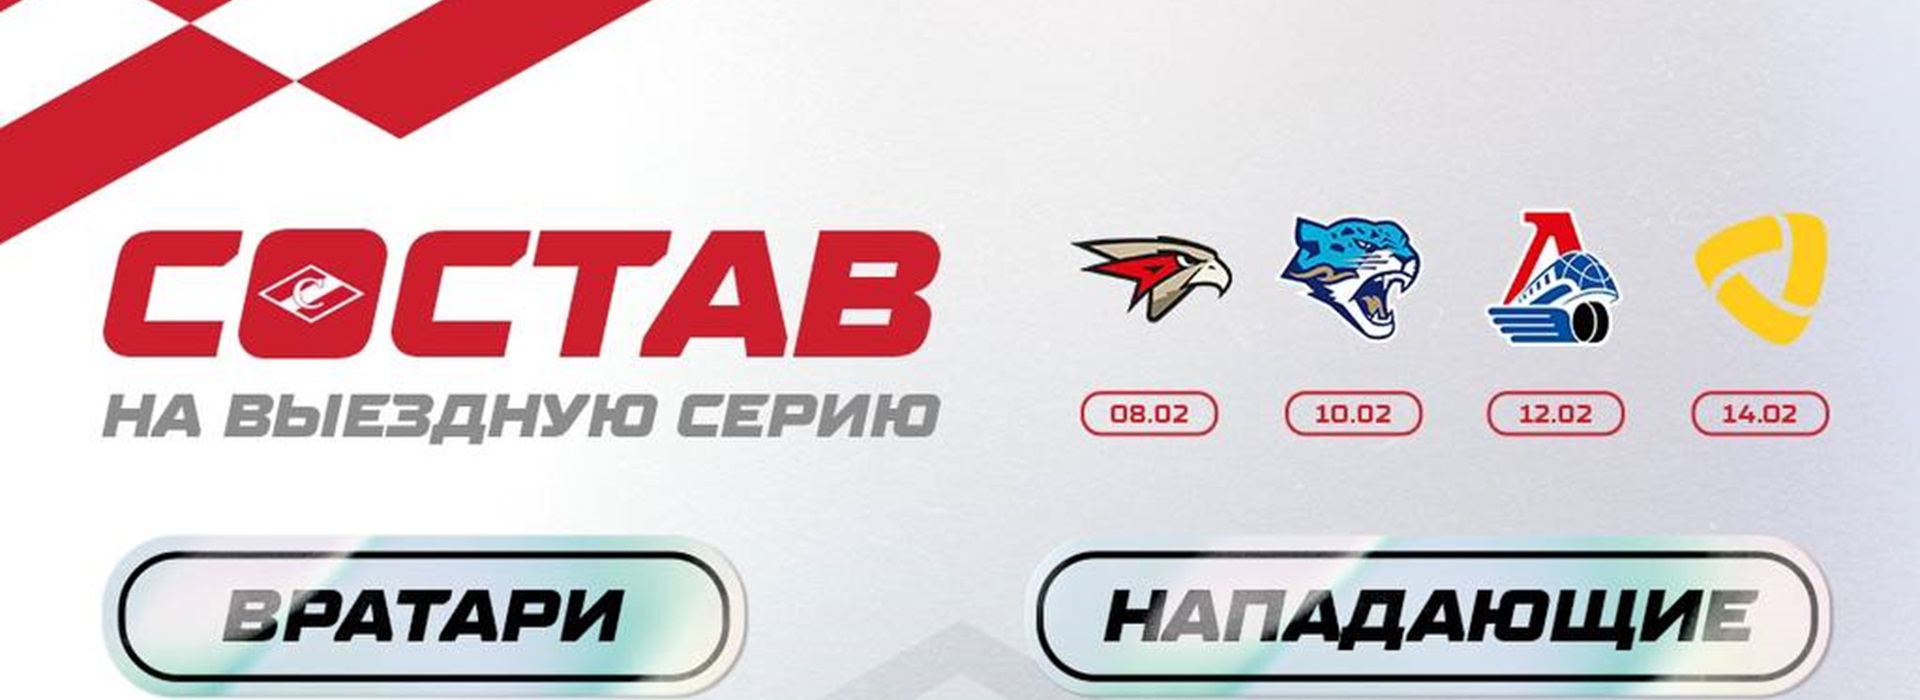 29 игроков «Спартака» – на заключительный выезд перед плей-офф!